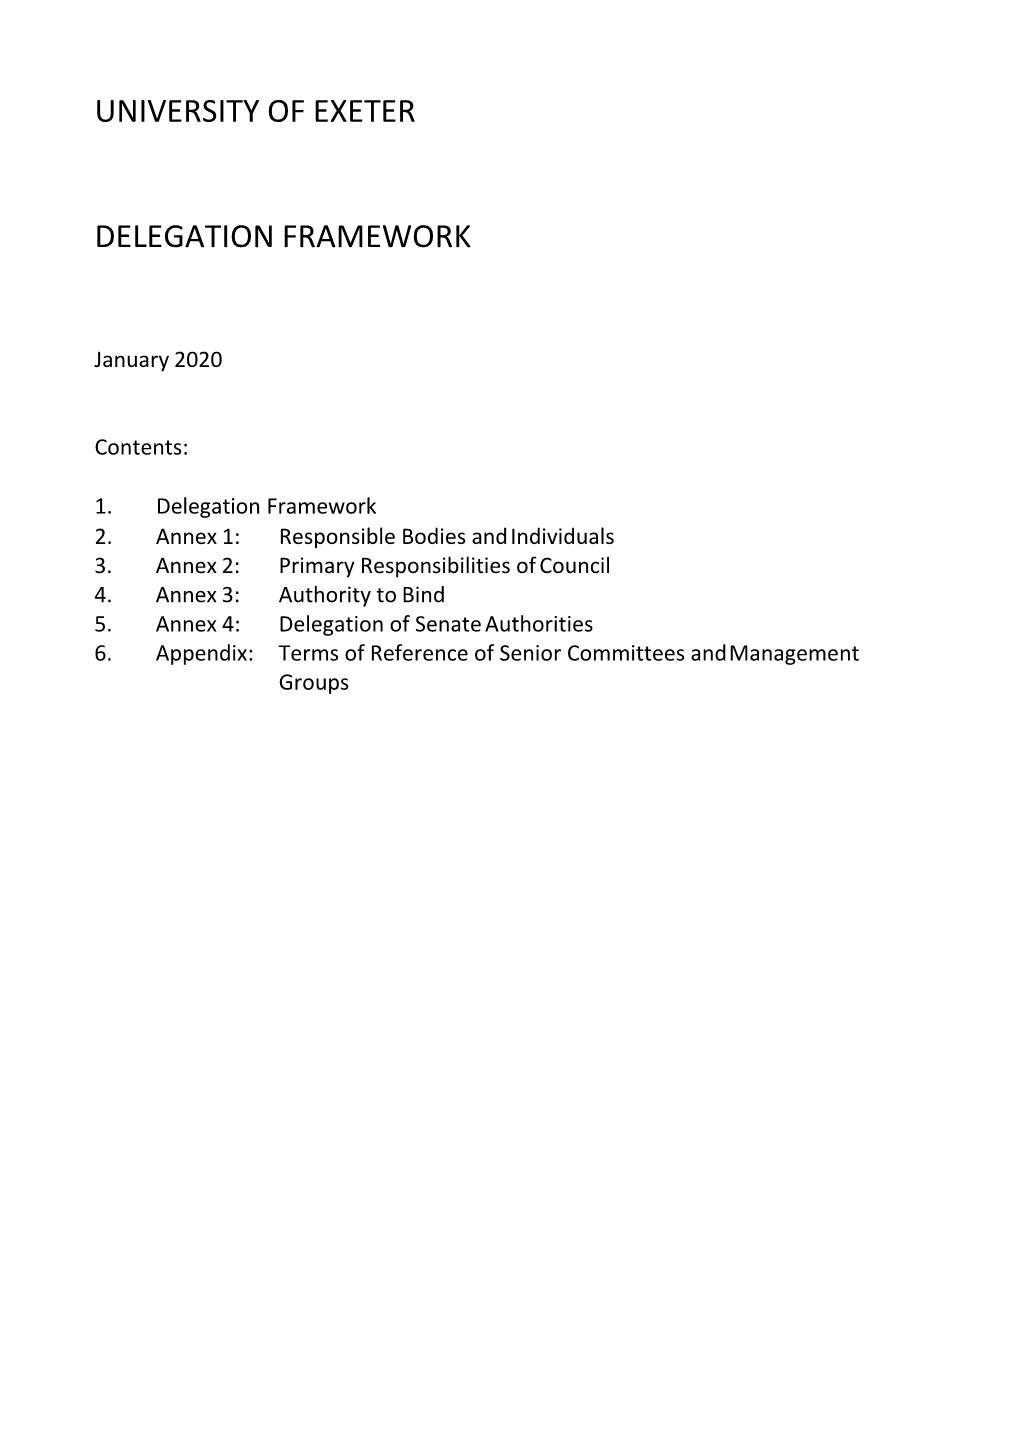 University of Exeter Delegation Framework